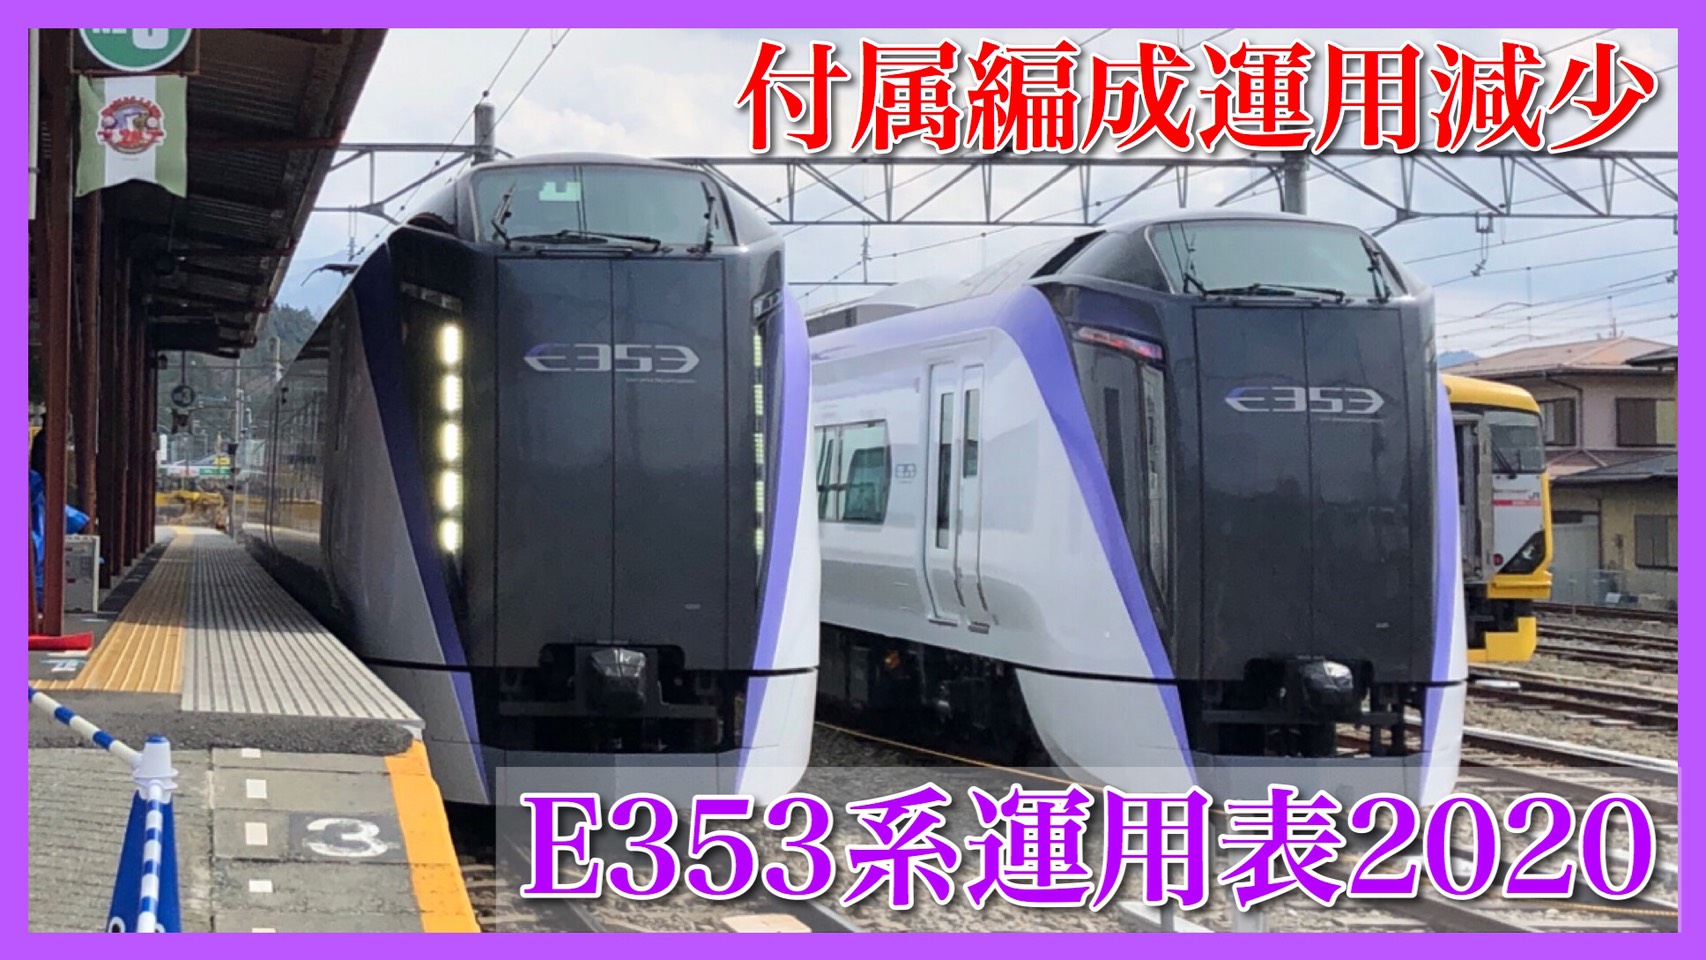 あずさ・かいじ】2020/3/14〜松本車両センターE353系車両運用表 | 鉄道